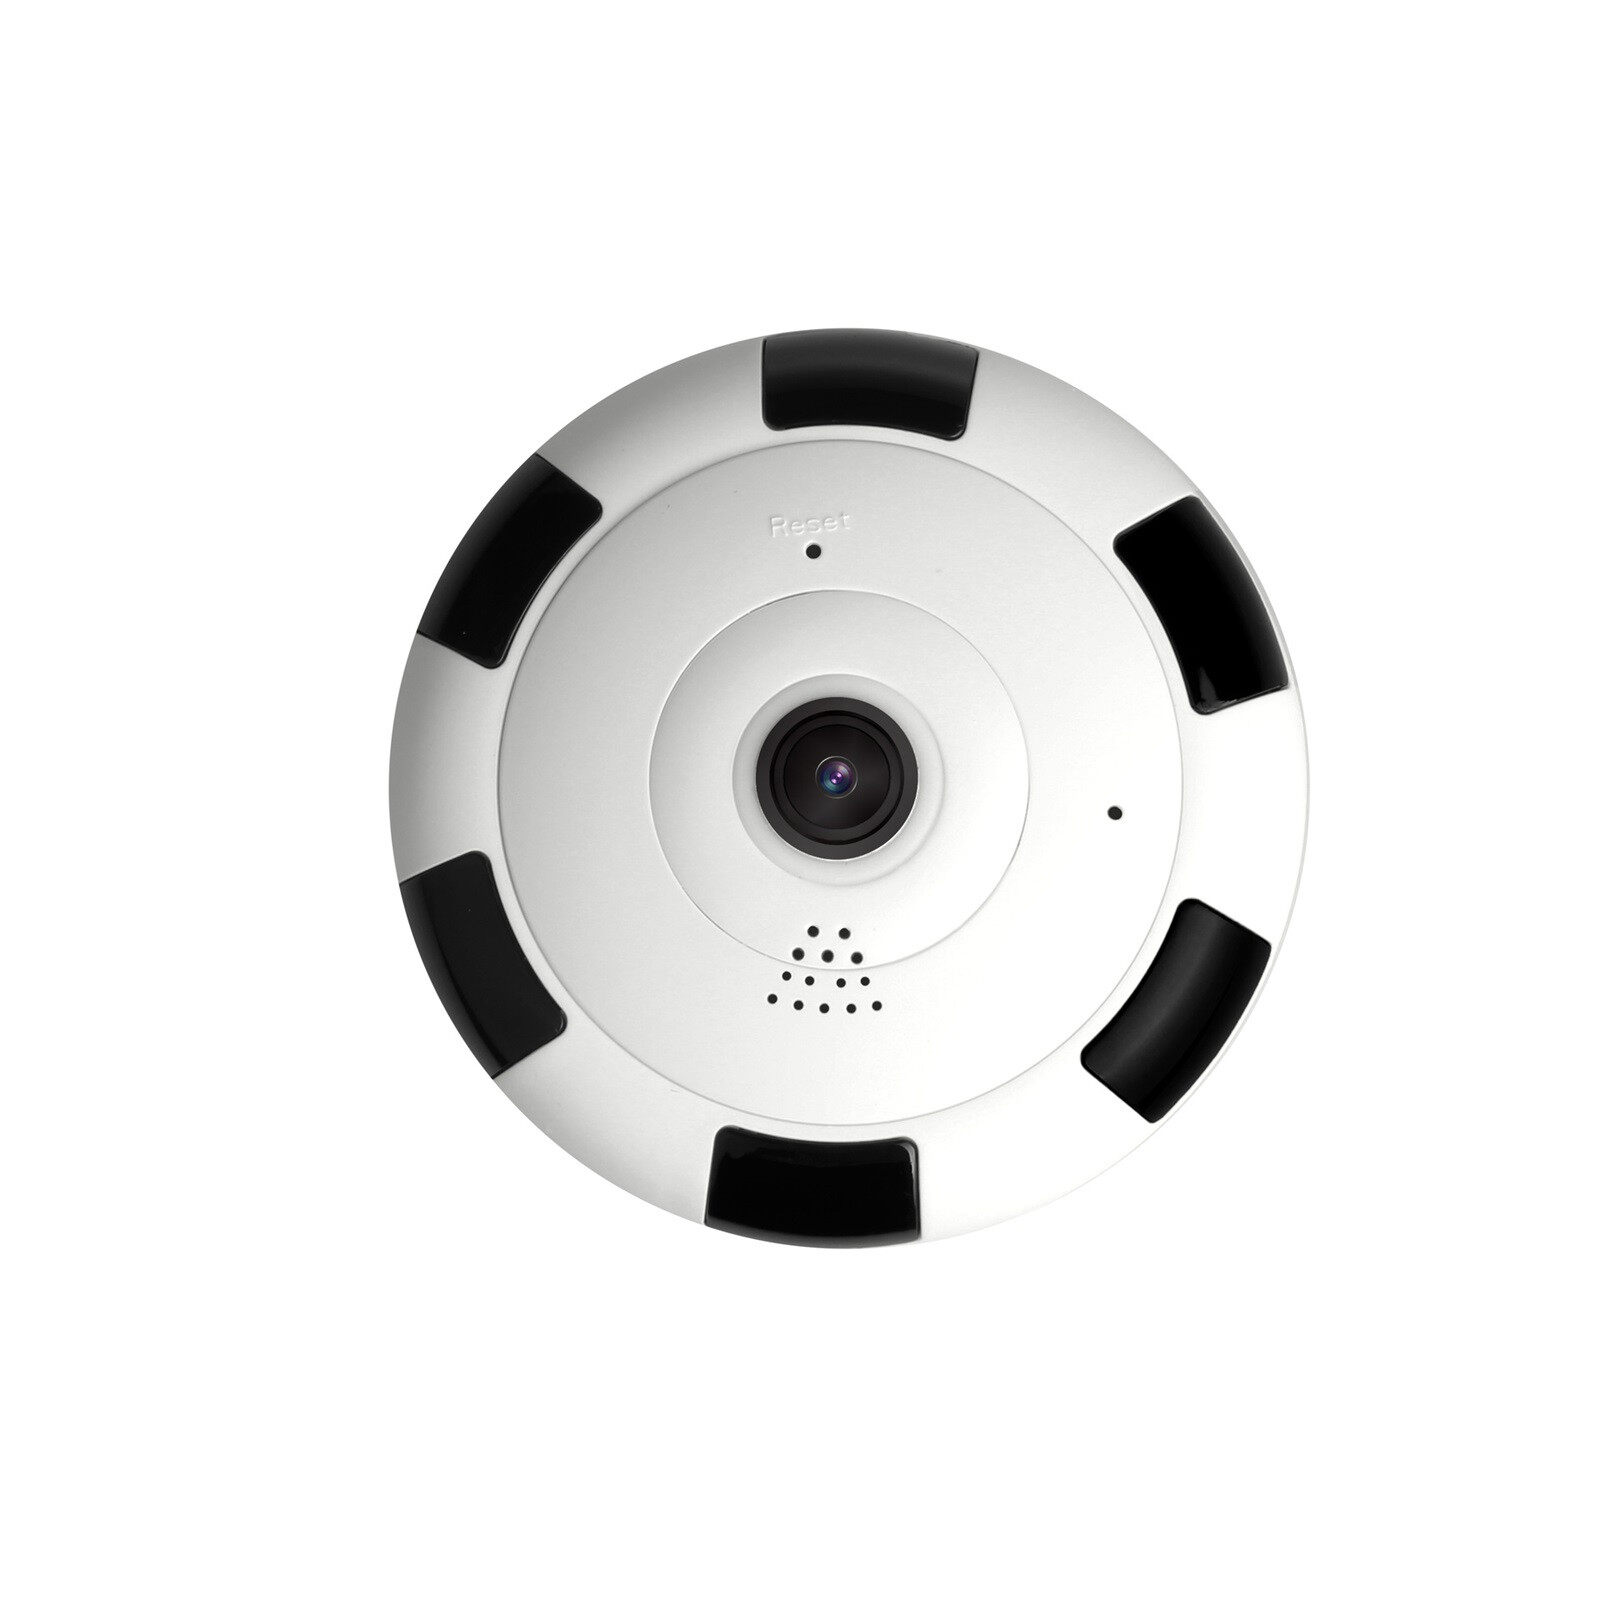 💥BẢO HÀNH 12 THÁNG - LỖI 1 ĐỔI 1💥Camera an ninh, Camera gia đình, Camera mini không dây kết nối...